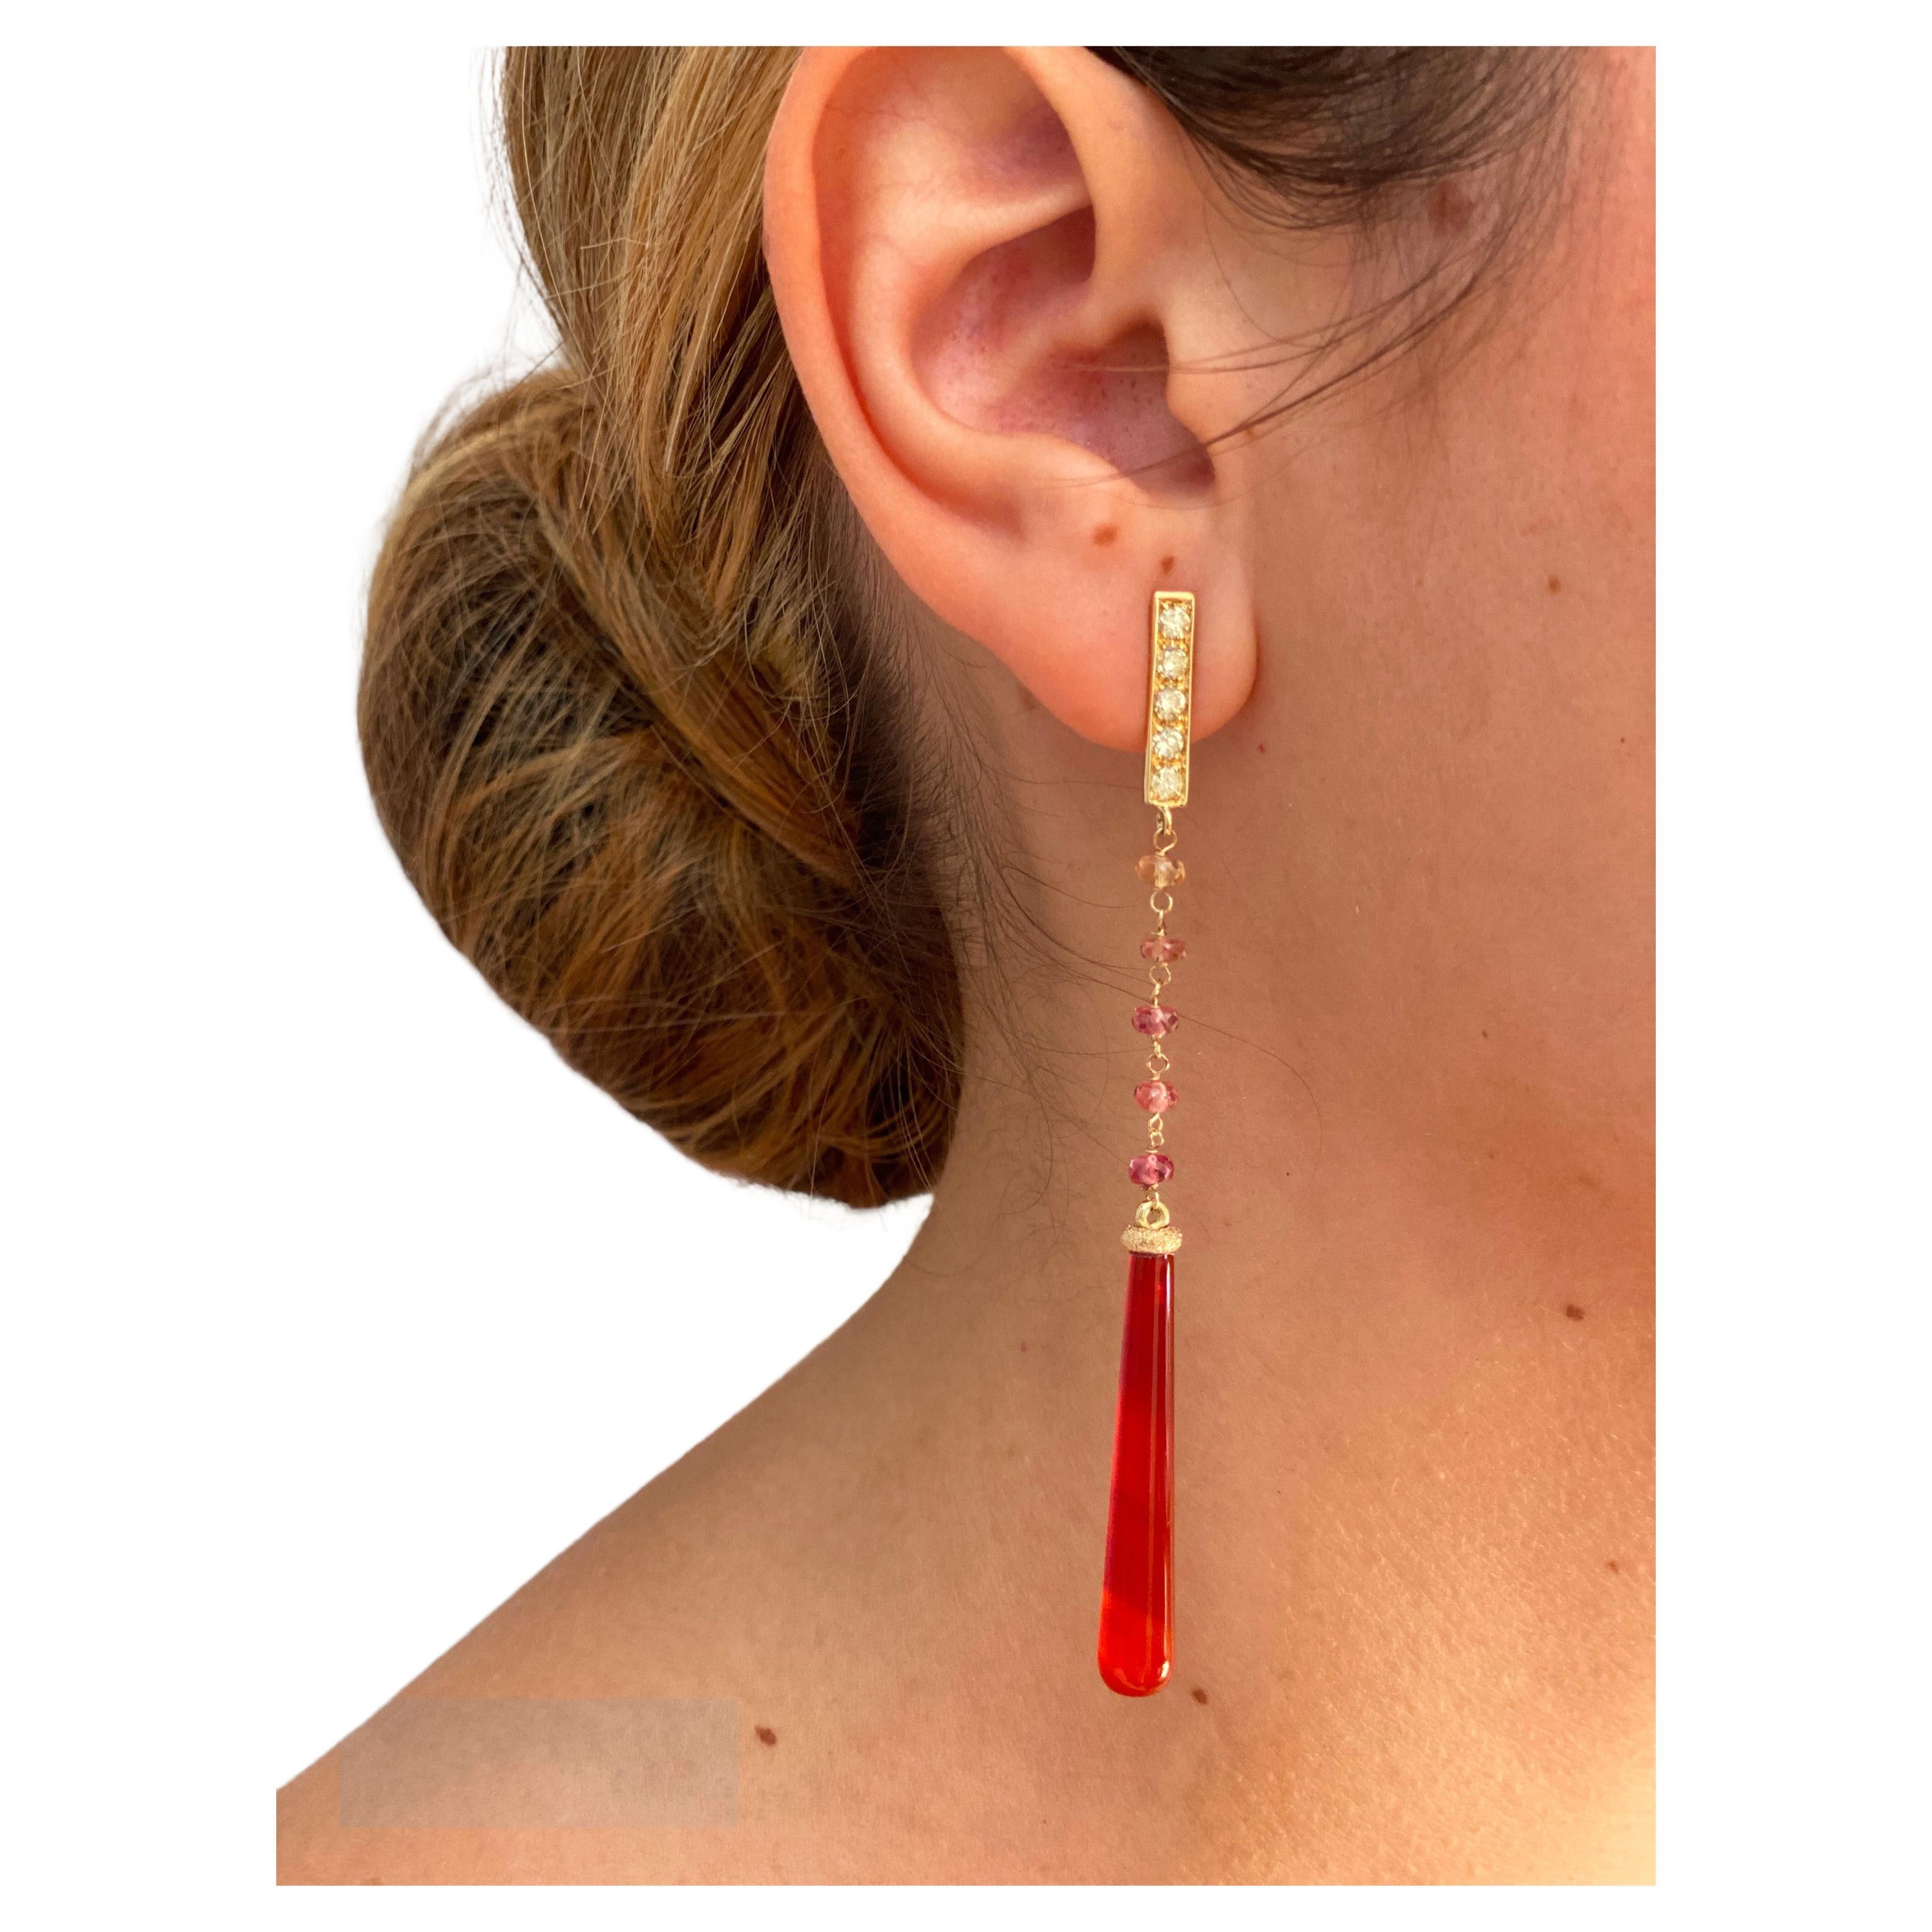 Jetzt verfügbar. Treten Sie ein in die Welt der zeitlosen Eleganz mit den Deco Style Dangle Earrings von Rossella Ugolini. Diese exquisiten Stücke werden im Herzen Italiens in sorgfältiger Handarbeit aus luxuriösem 18-karätigem Gelbgold gefertigt